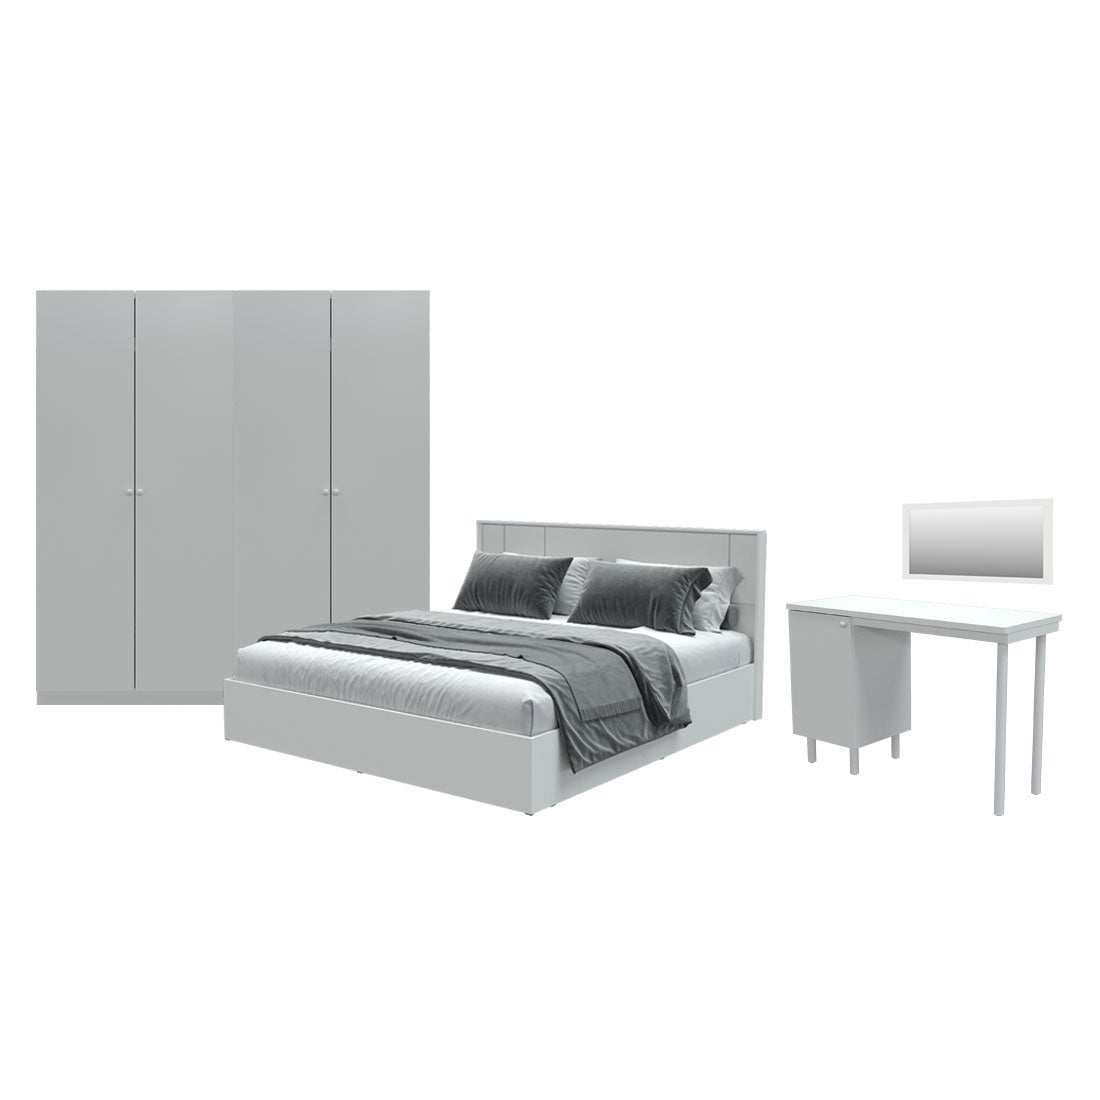 ชุดห้องนอน ขนาด 5 ฟุต รุ่น Pearliz และ ตู้ Blox ขนาด 200 ซม. พร้อมโต๊ะทำงาน สีขาว มิดกรอส01